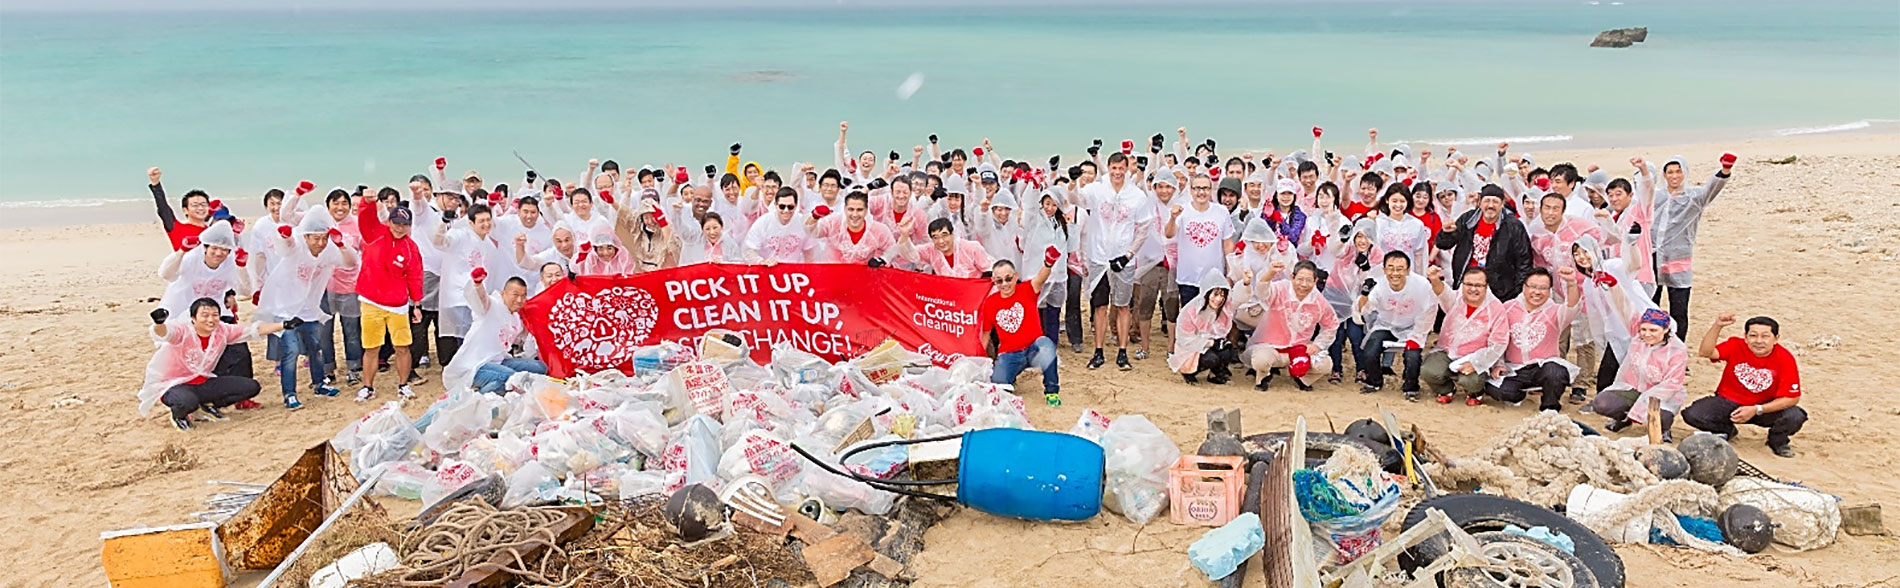 県内の海岸で過去最大規模の清掃ボランティアを実施